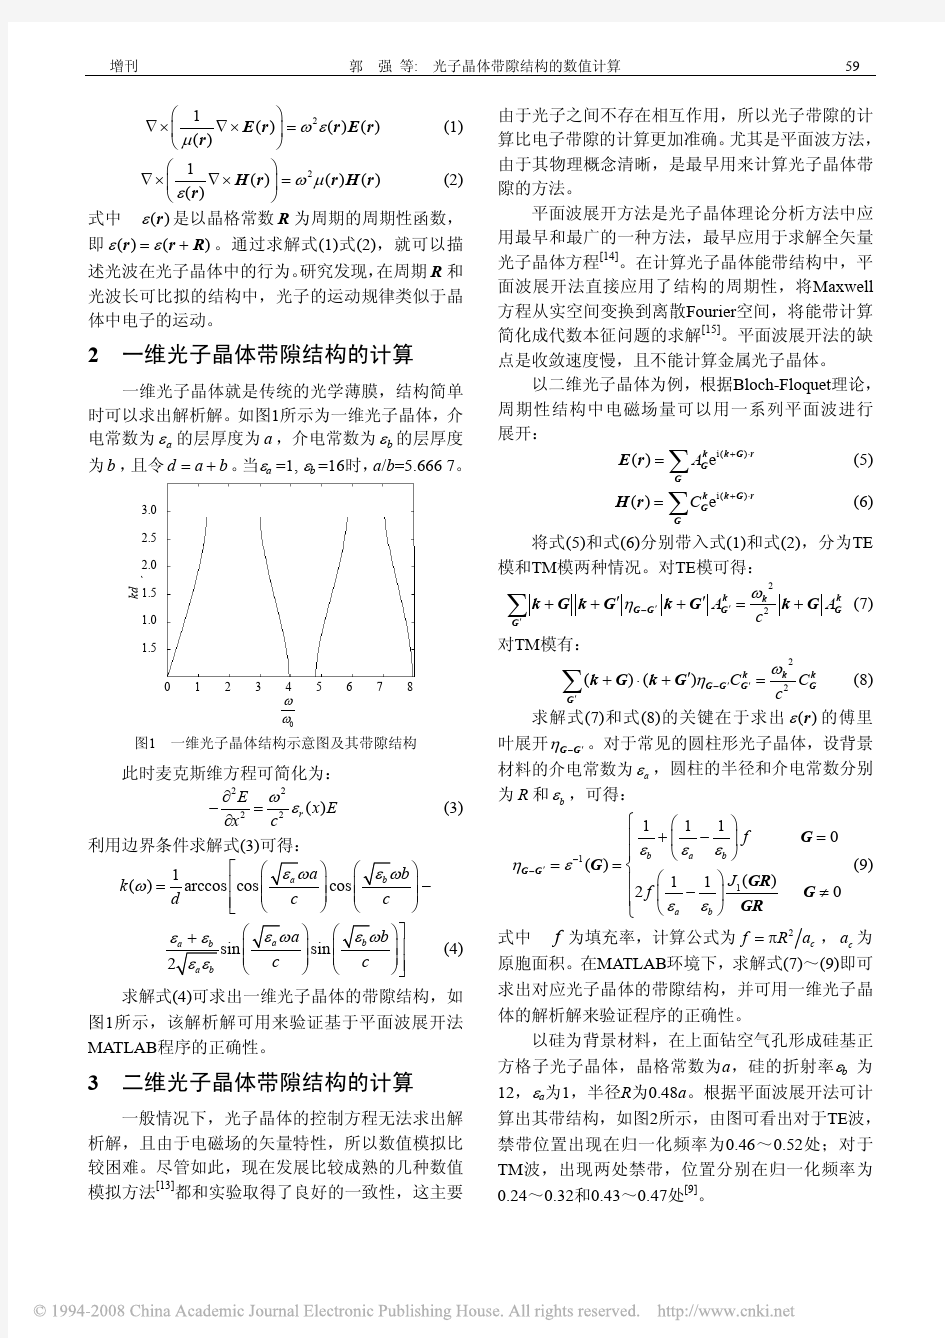 光子晶体带隙结构的数值计算 - index  清华大学网络资源